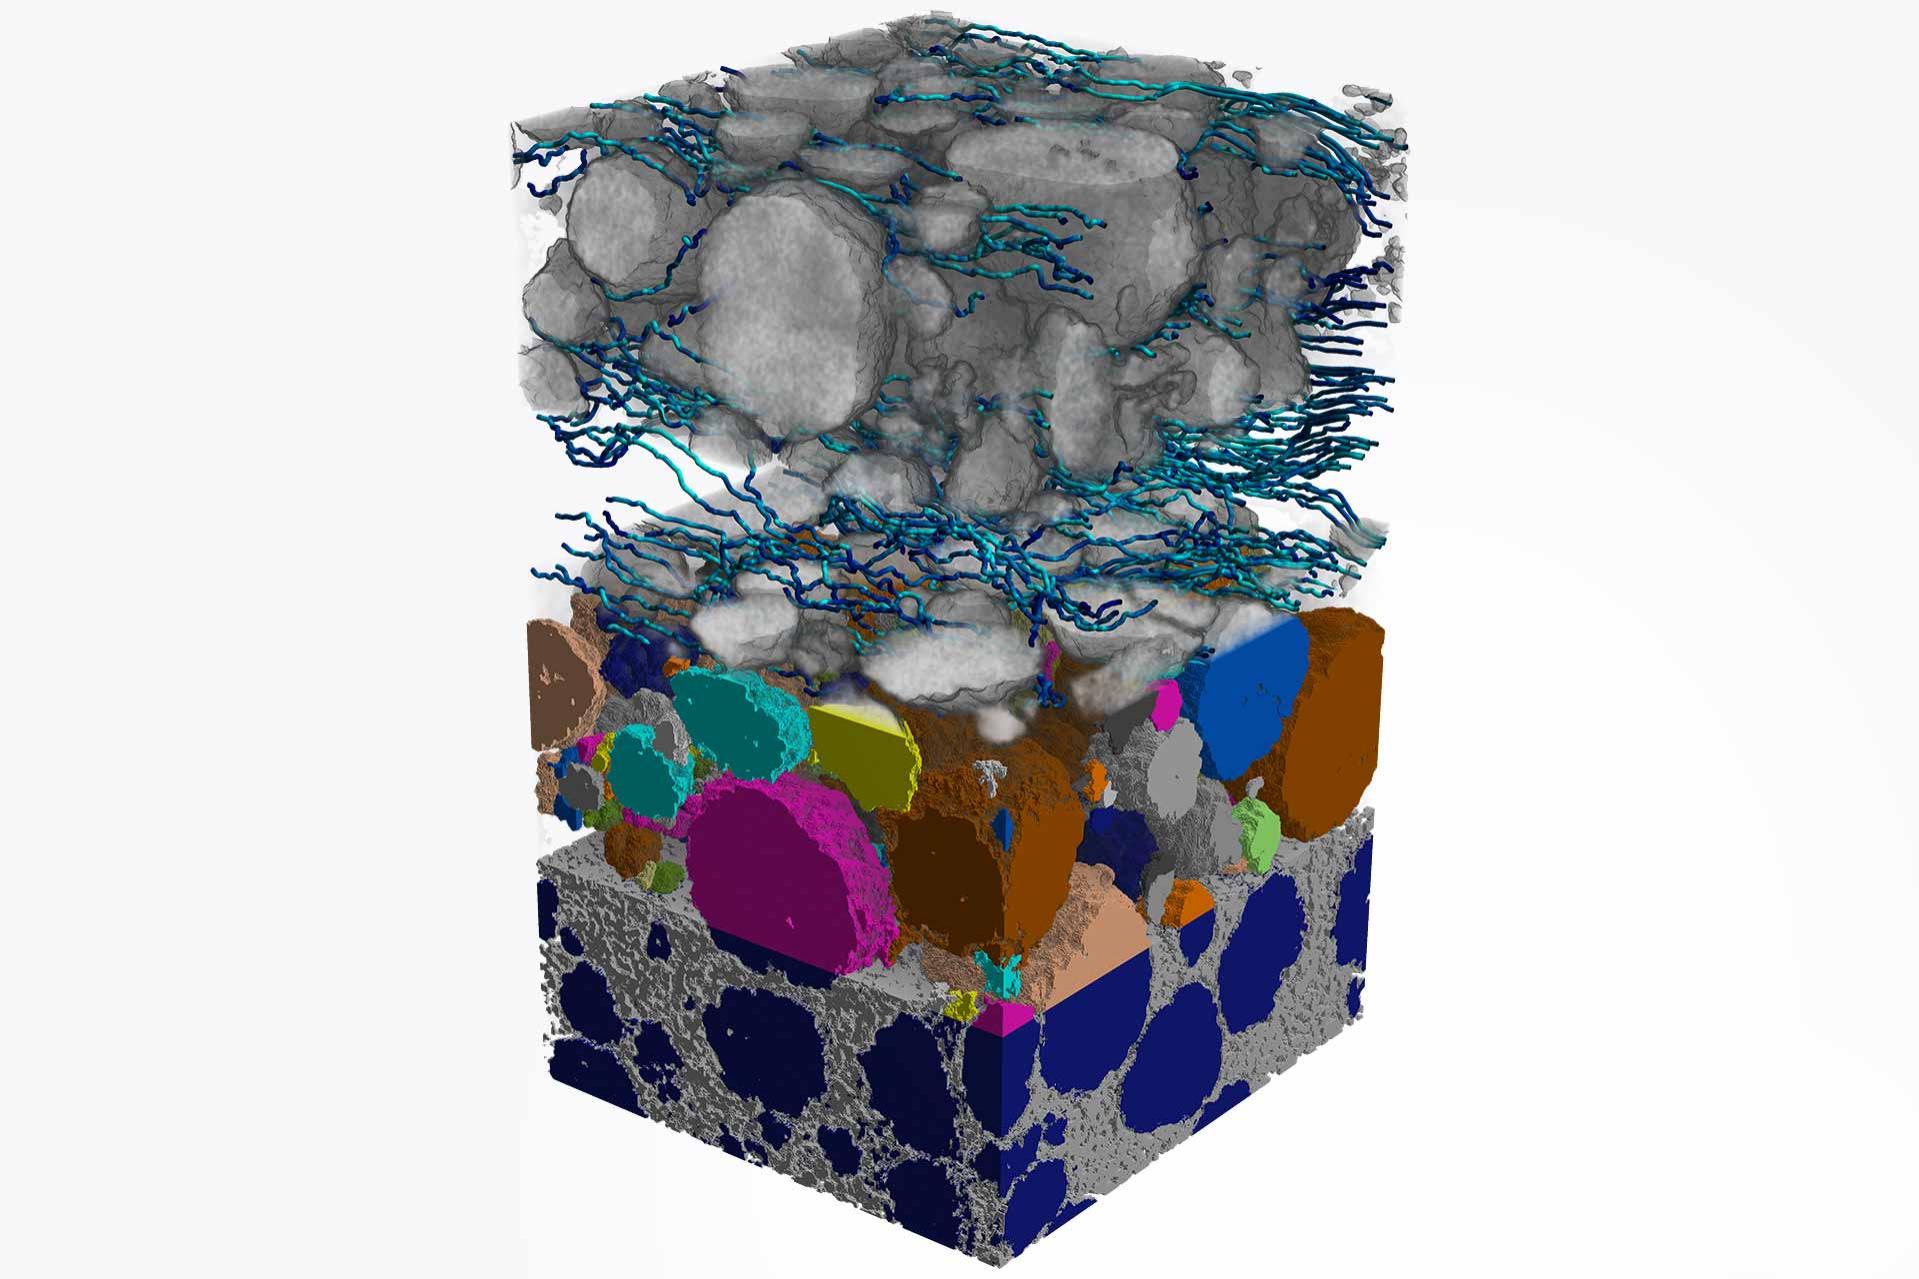 Captura de imágenes de nanotomografía de rayos X en 3D y simulación digital de materiales para mapear los comportamientos de difusión